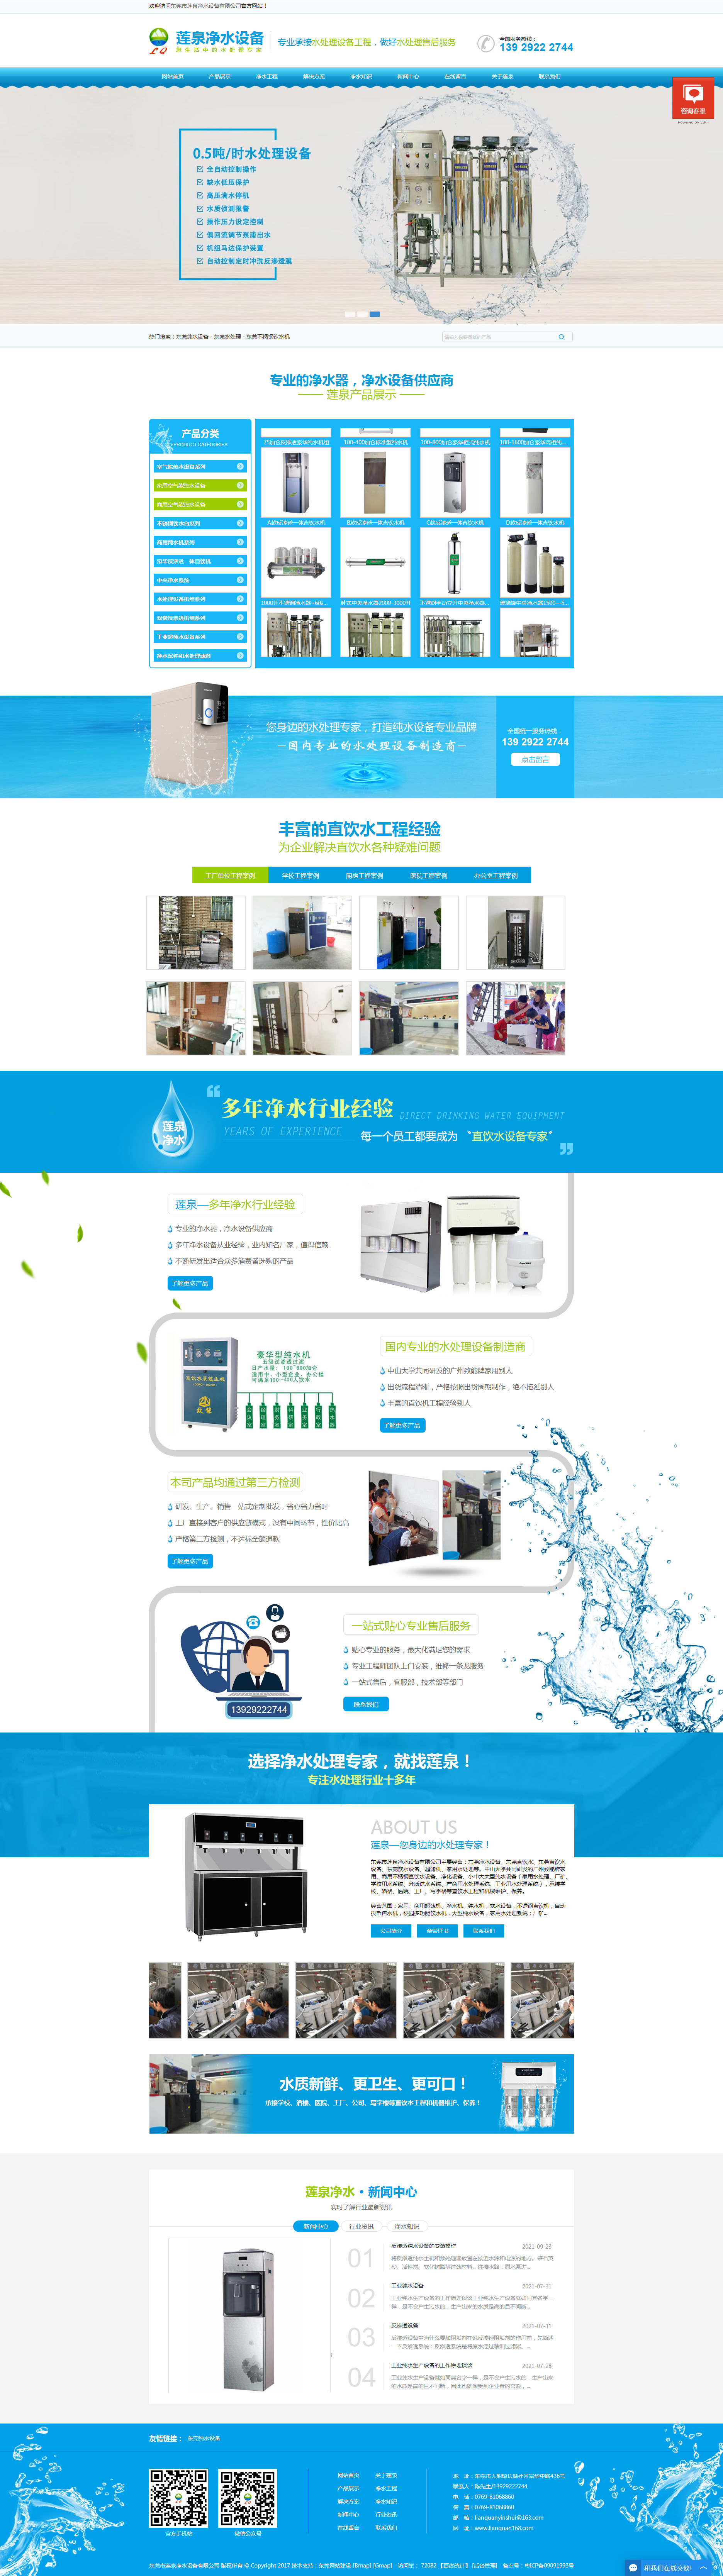 东莞莲泉净水设备网站设计效果图